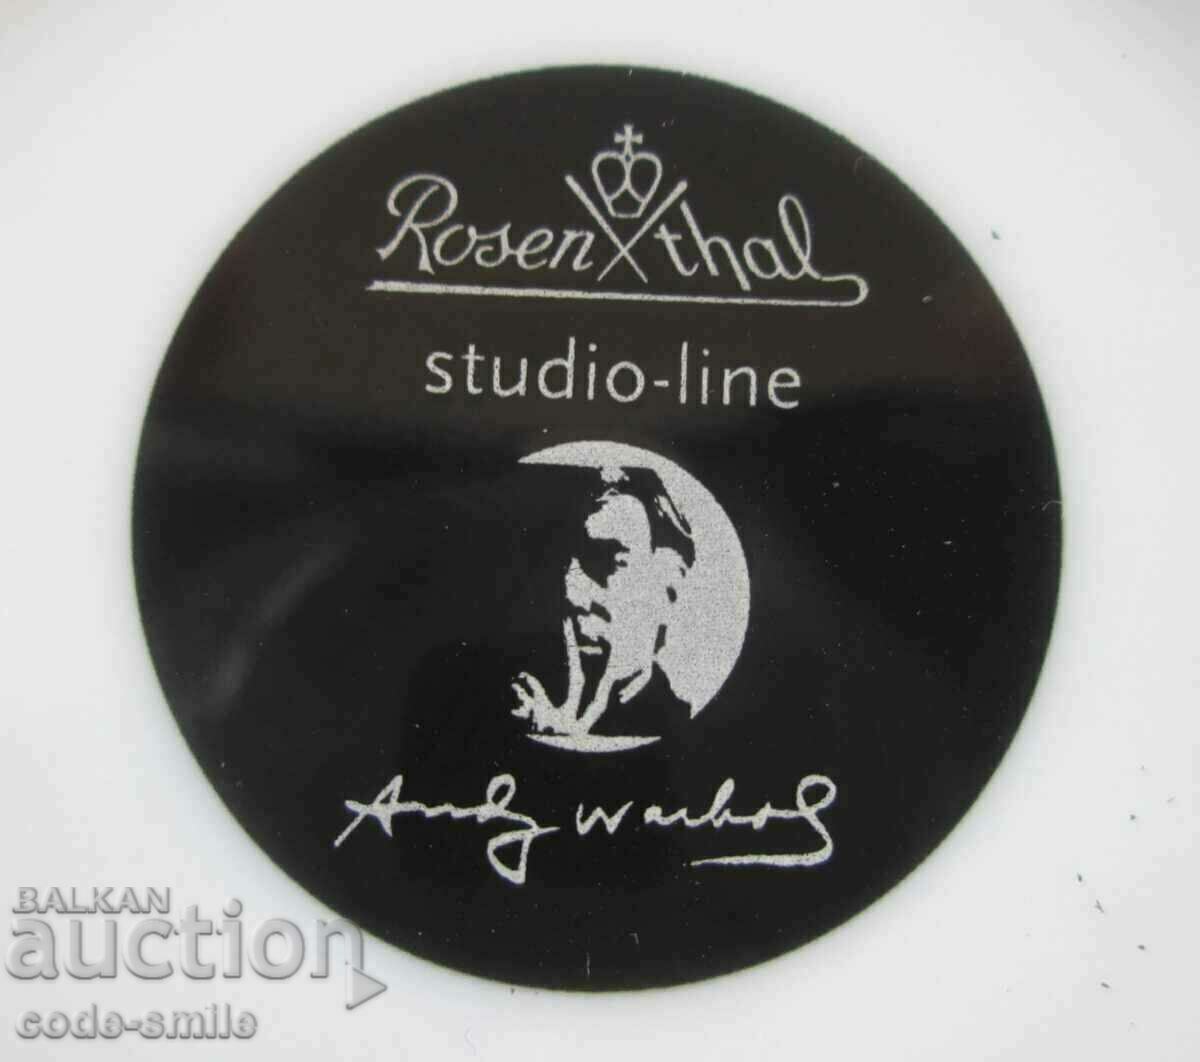 Vintage Andy Warhol Limited Art Set Rosenthal Porcelain